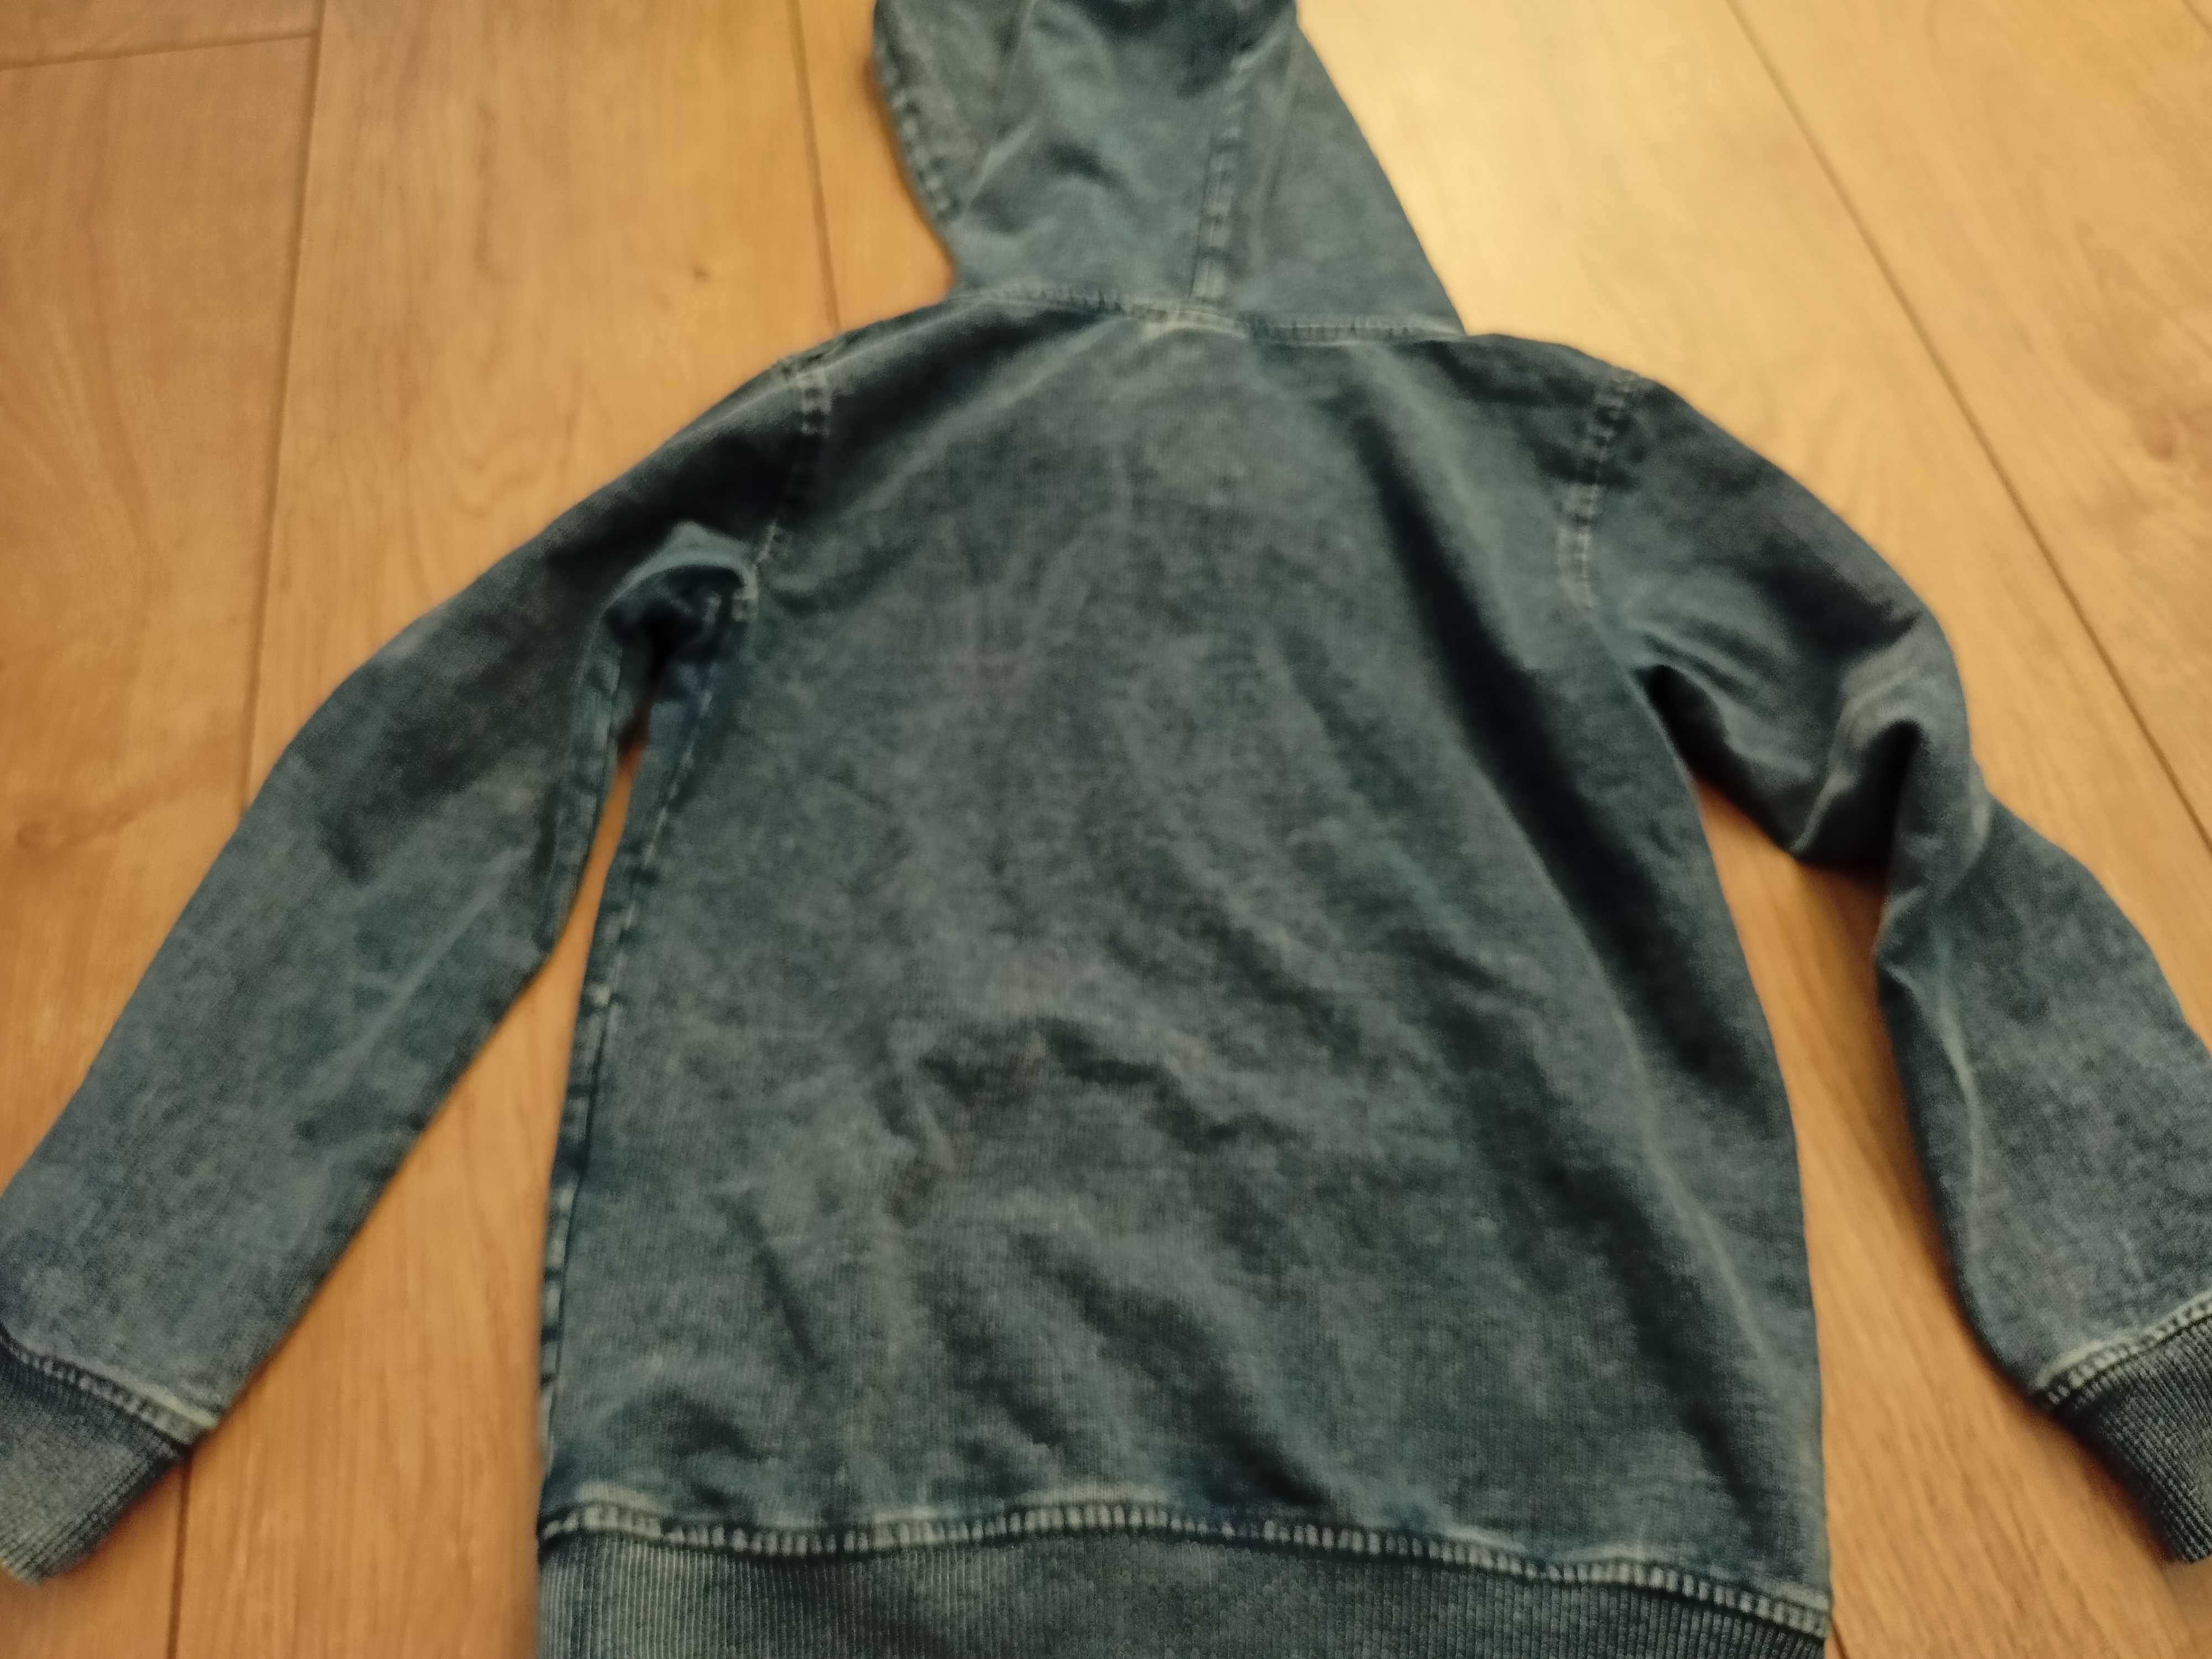 Bluza chłopięca z kapturem, granatowa, imitacja jeansu - rozm. 110/116